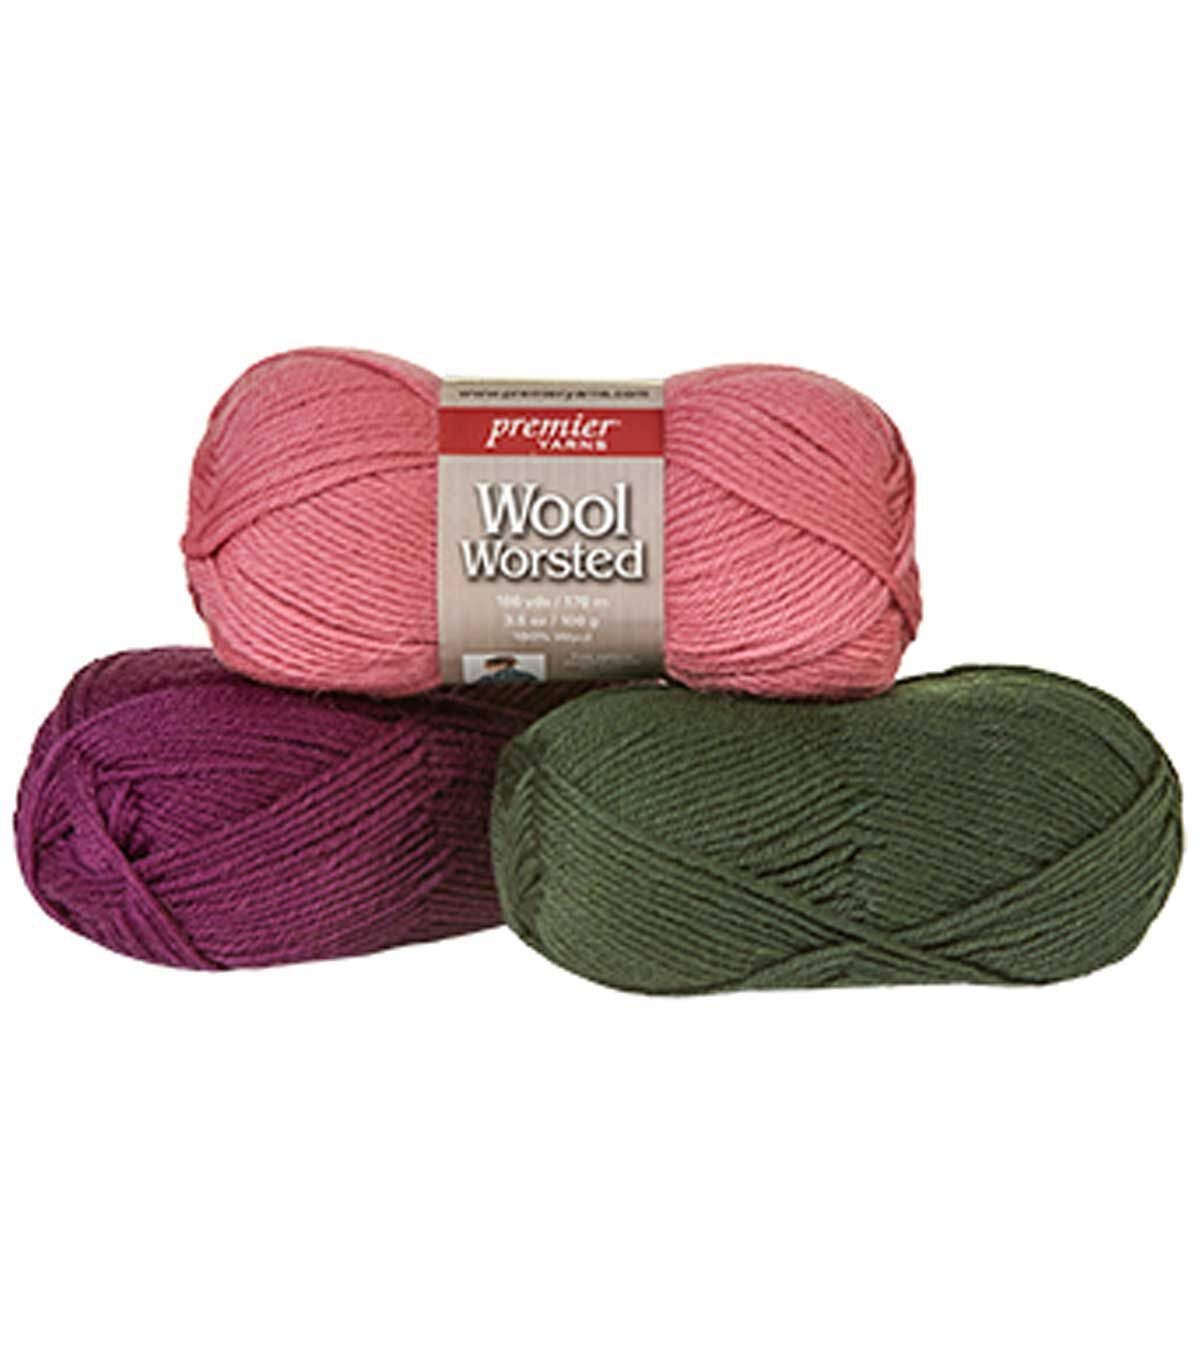 Worsted Wool Yarn - 100% Wool Yarn